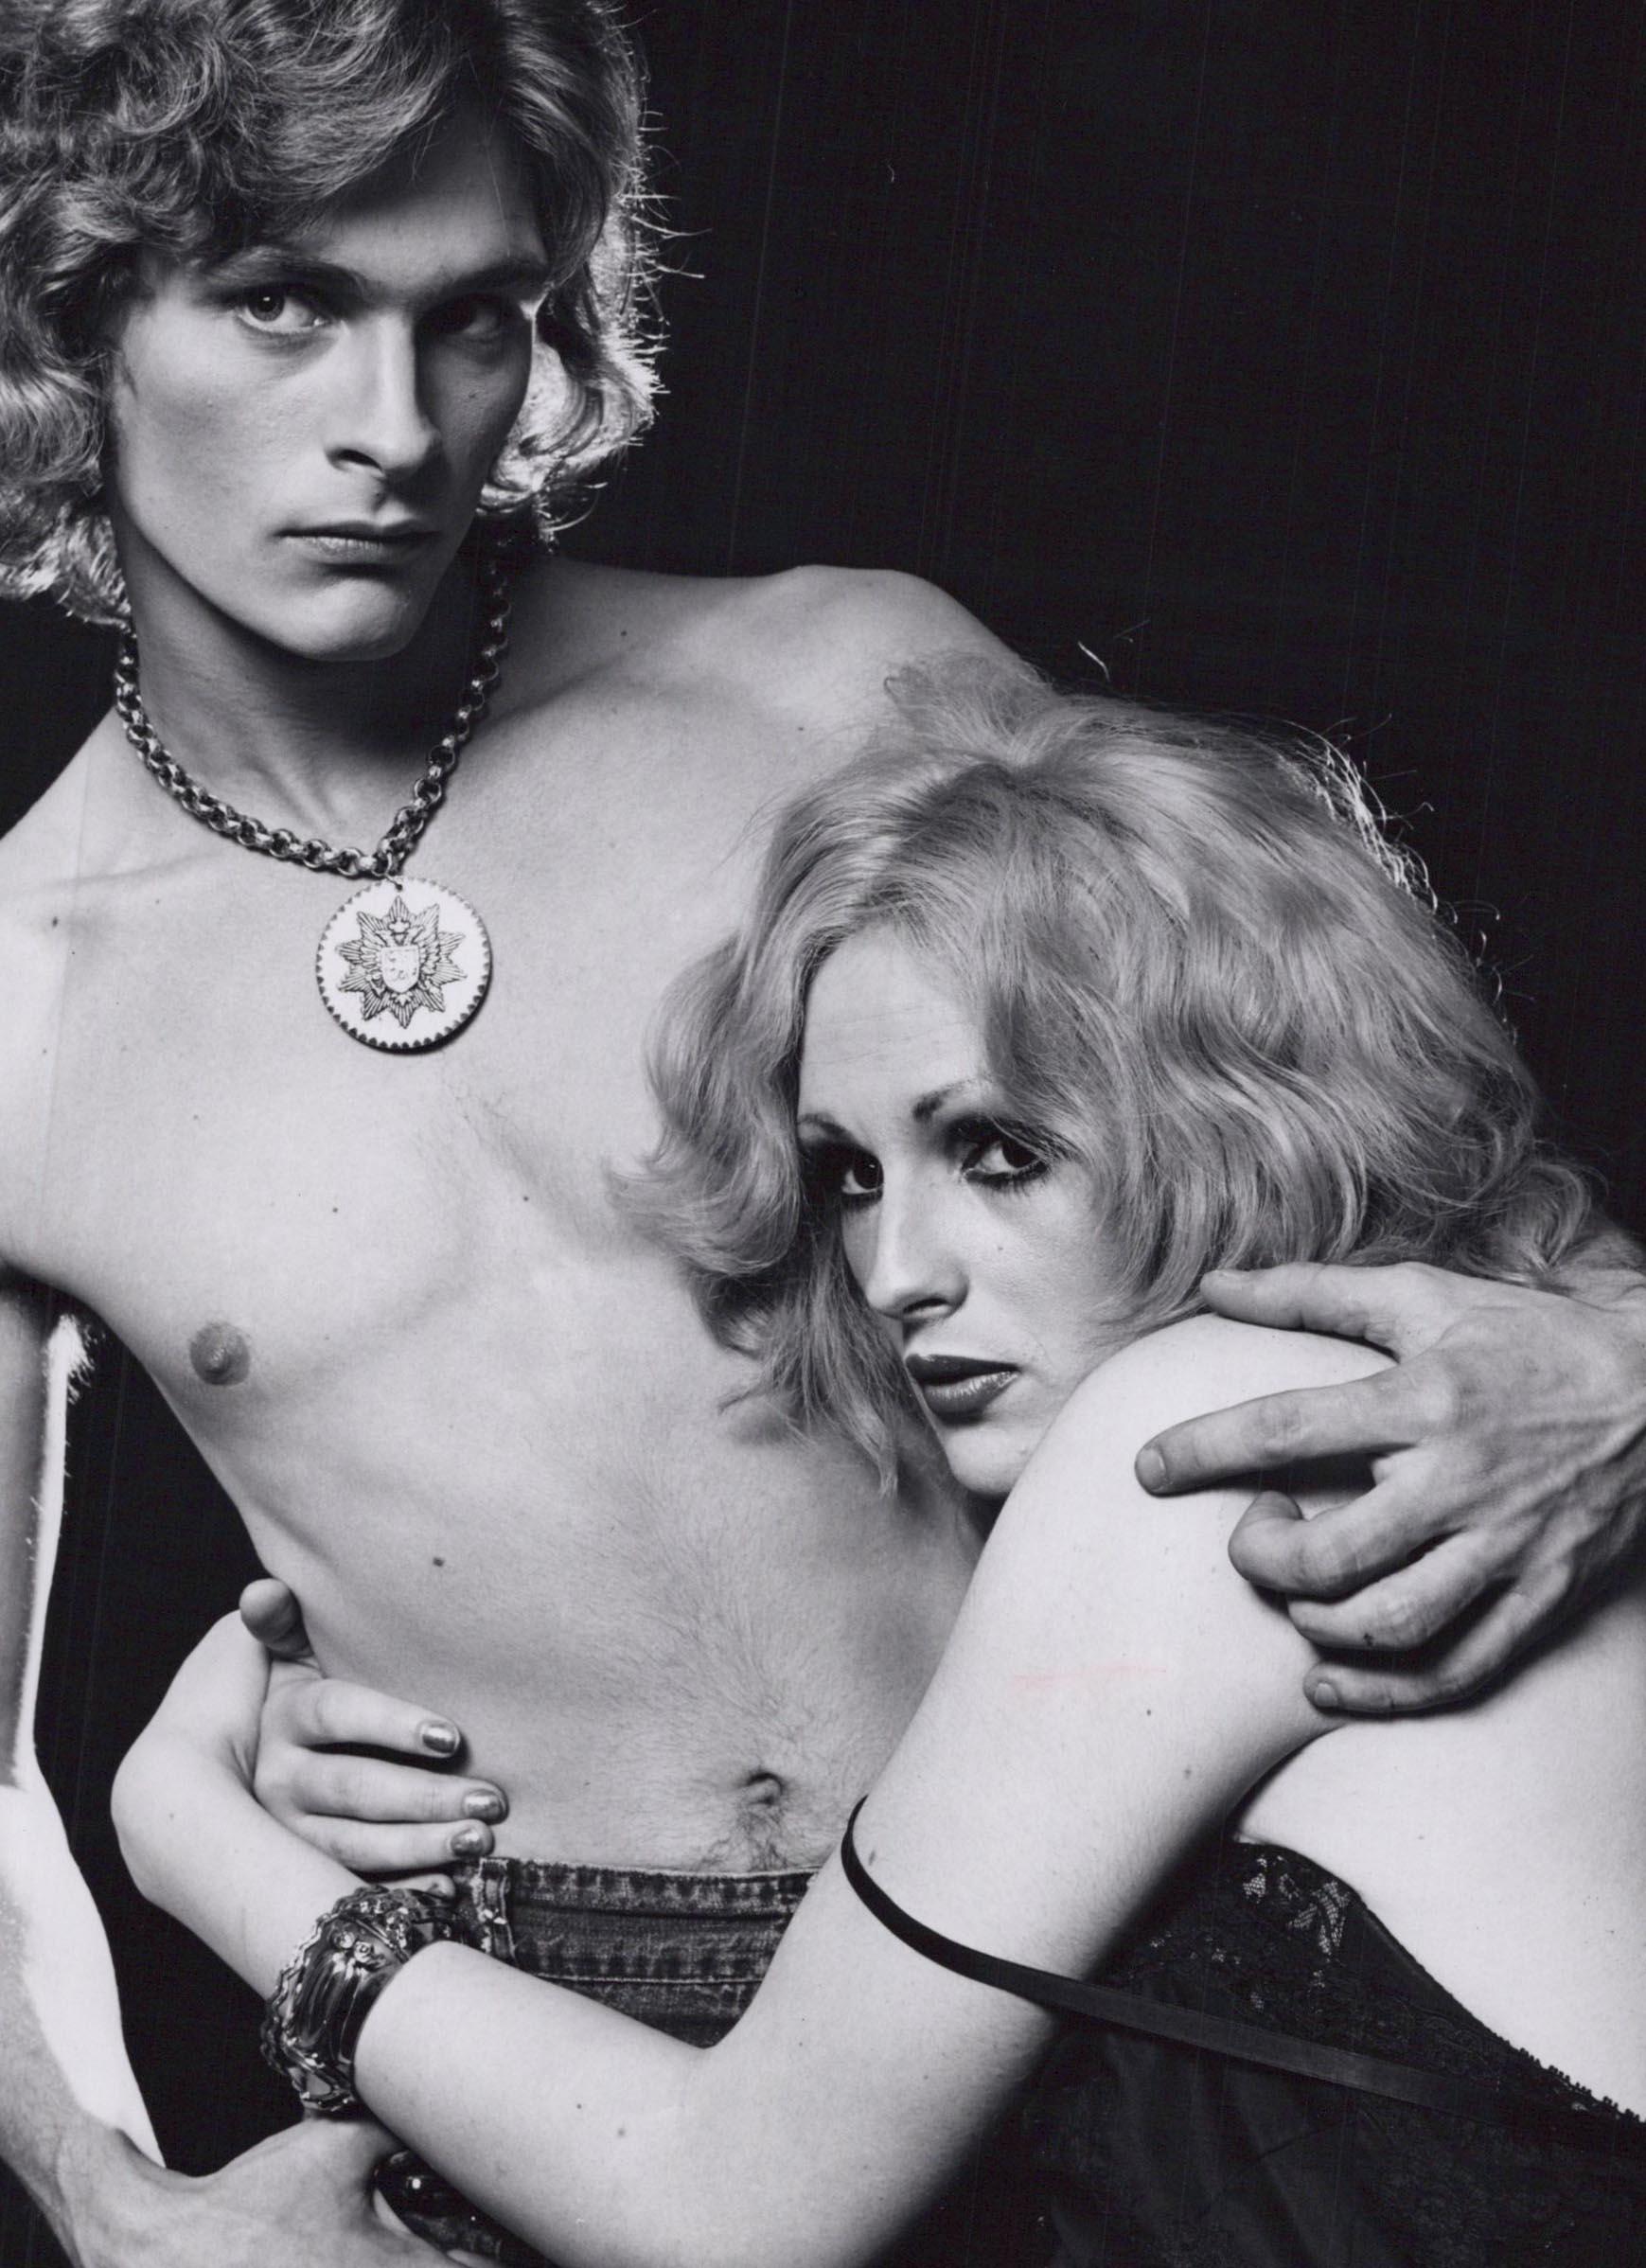 Andy Warhol Superstar Candy Darling et Dorian Gray - Photograph de Jack Mitchell